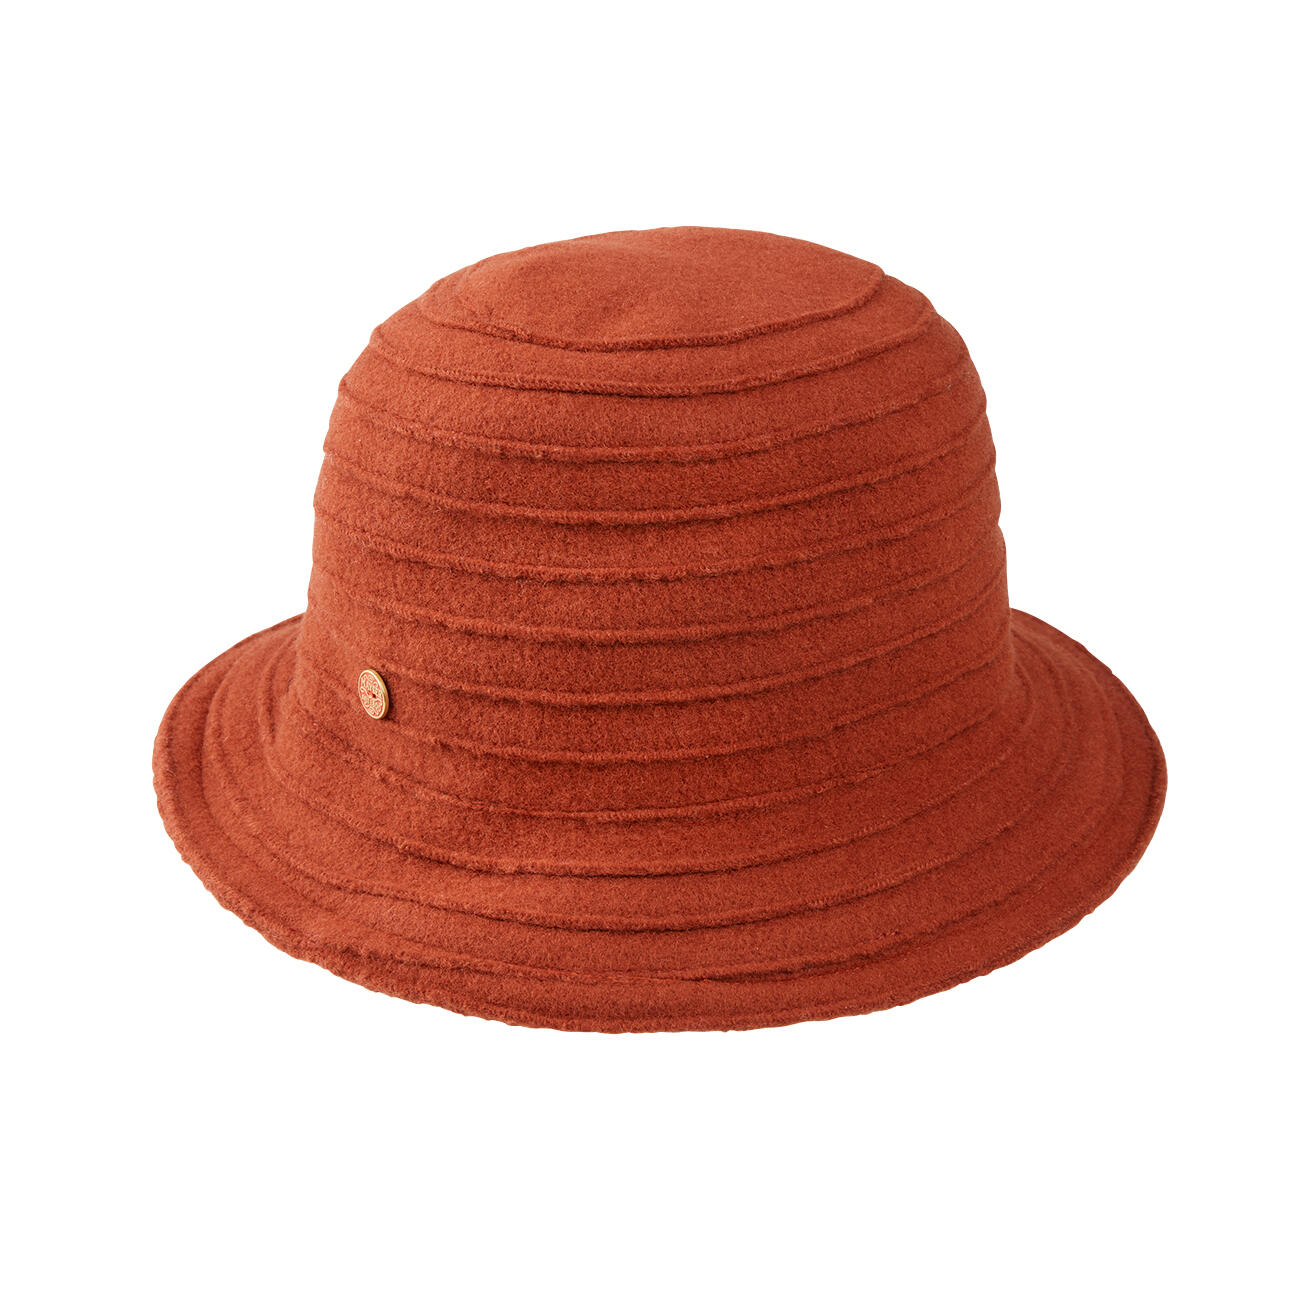 Guggenheim Museum Ten einde raad oriëntatie Mayser wollen hoed met biezen | Klassiker entdecken